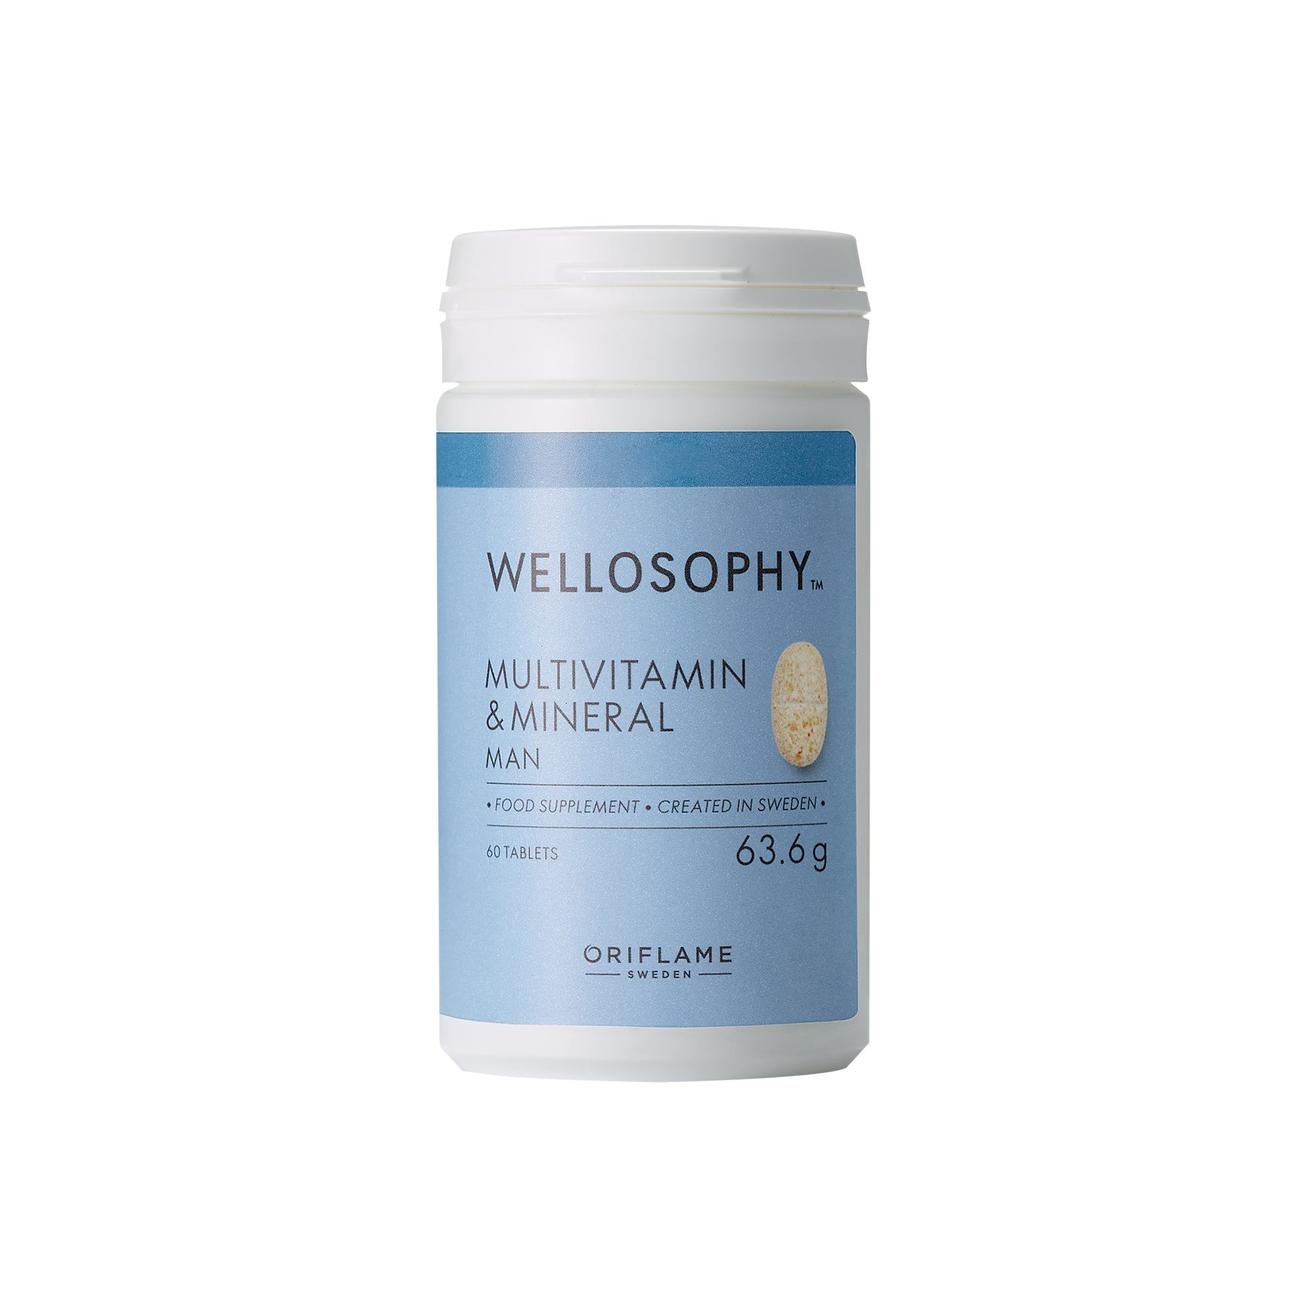 Wellosophy Multivitamin & Mineral miehille tuote hintaan 22,9€ liikkeestä Oriflame